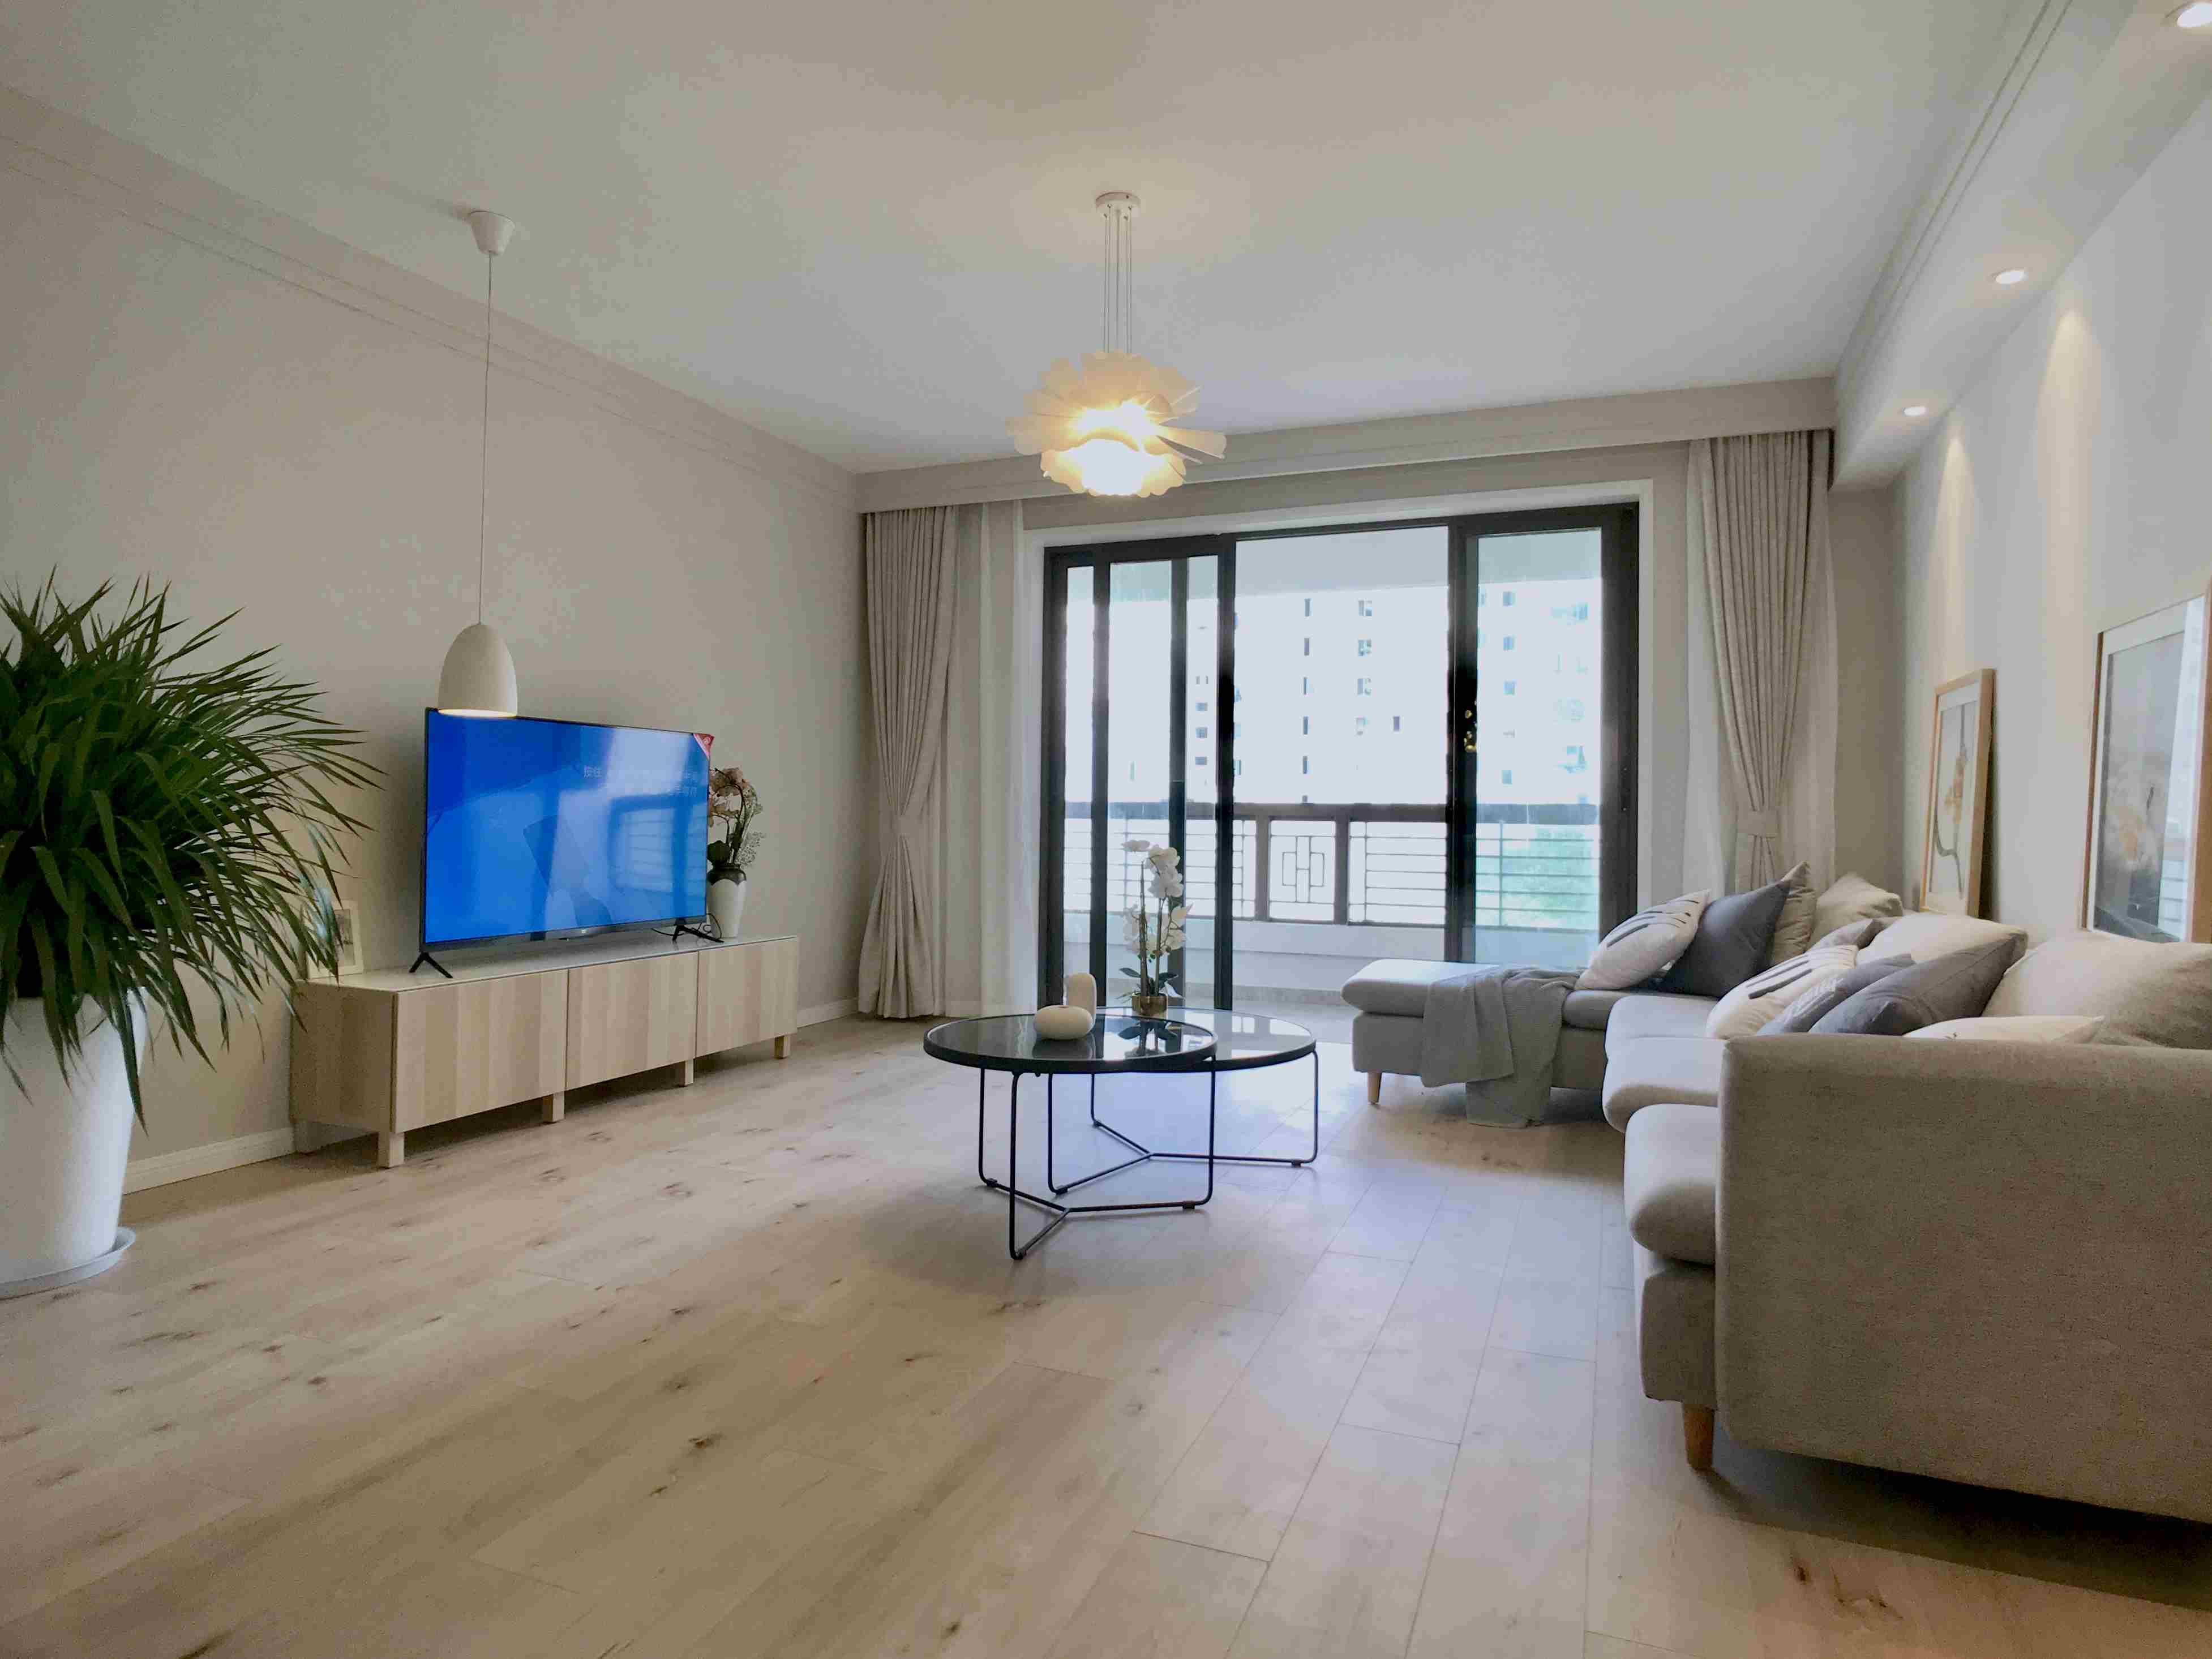  New 3BR Apartment w/ Floor-Heating in Laoximen